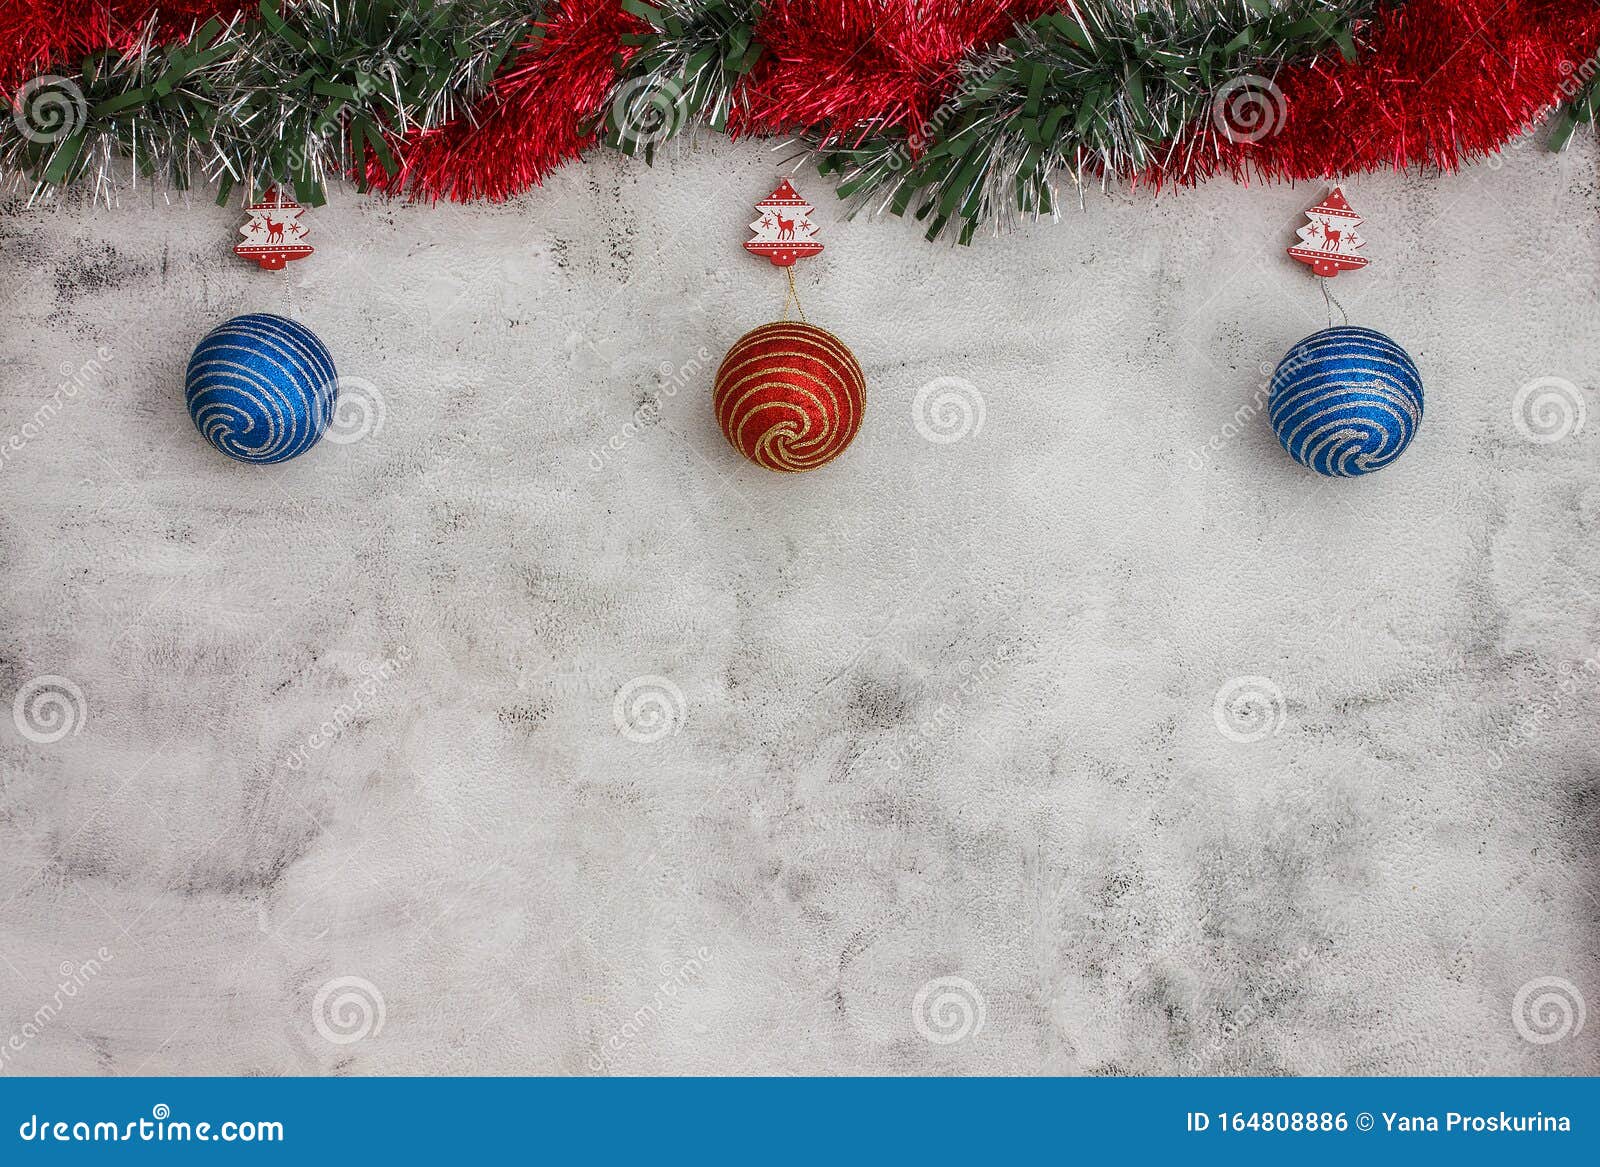 Để làm nên một không gian Giáng sinh lung linh, nền động màu xám với các quả cầu màu đỏ và xanh là sự lựa chọn hoàn hảo. Sự cân đối giữa các gam màu mạnh mẽ sẽ giúp cho không gian của bạn trở nên sống động và đầy sức sống.